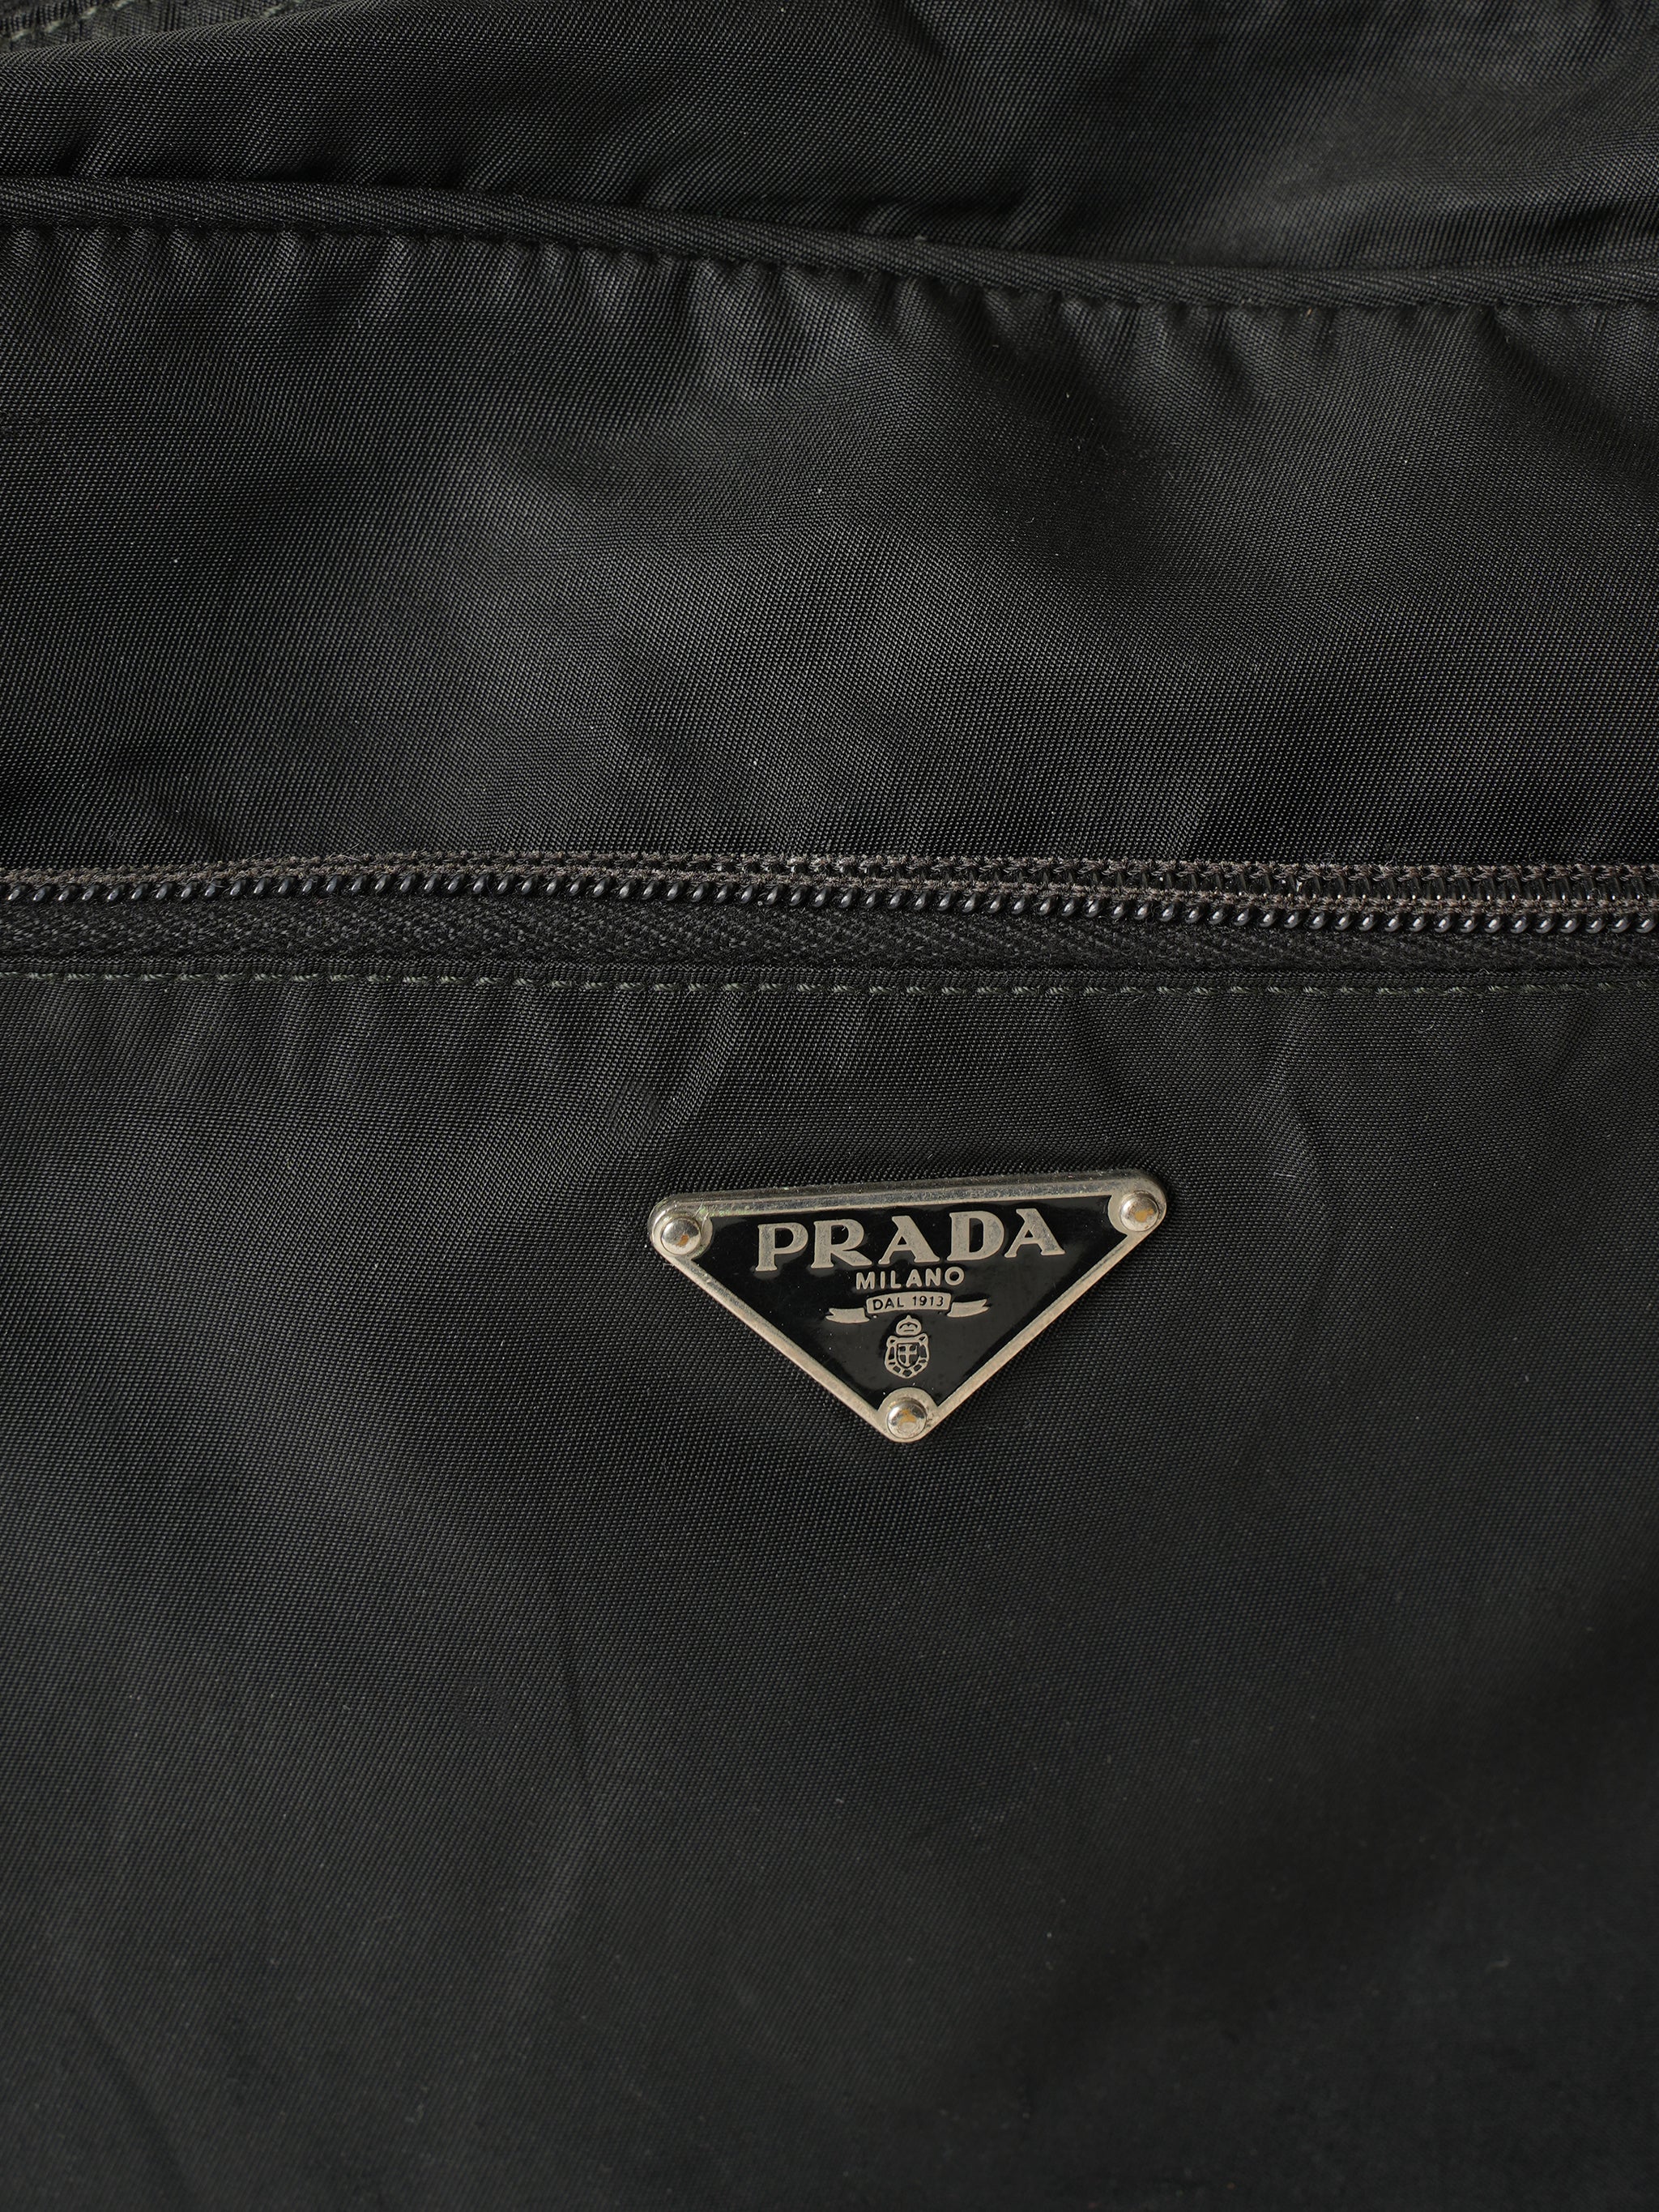 Prada Vintage Black Nylon Crossbody Bag